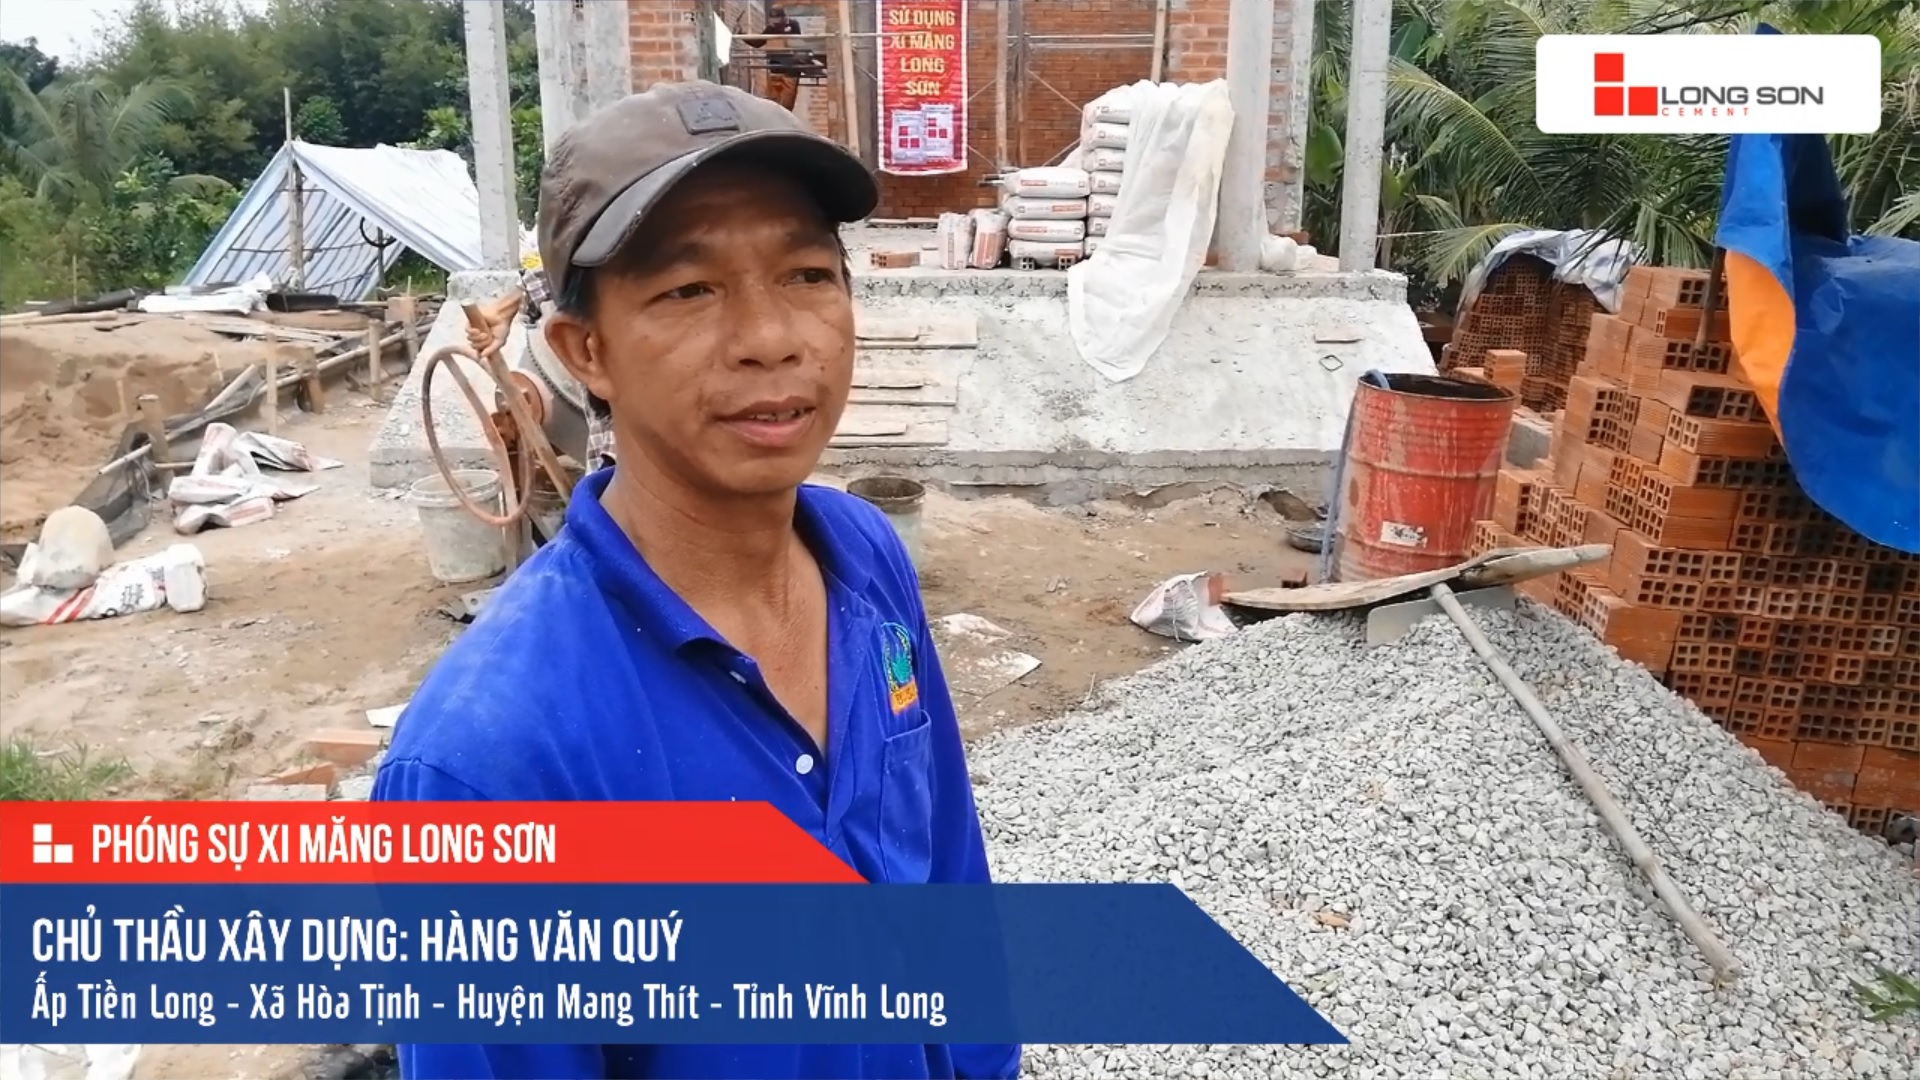 Phóng sự công trình sử dụng Xi măng Long Sơn tại Vĩnh Long 11.11.2019